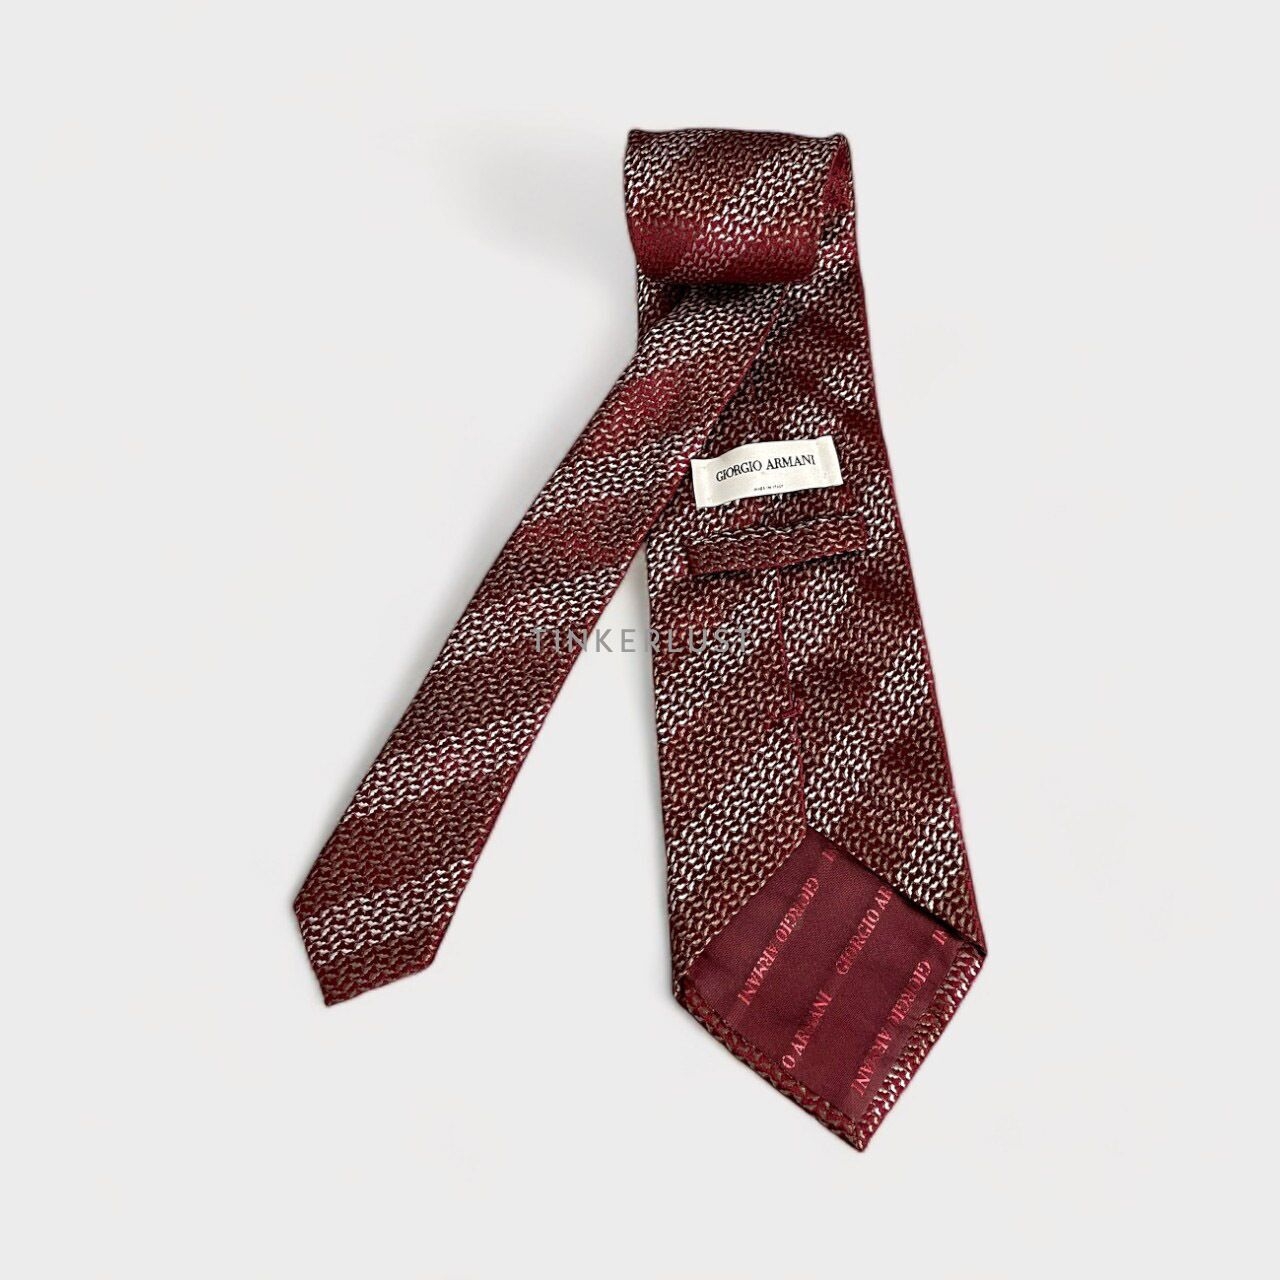 Giorgio Armani Red Patterned Tie